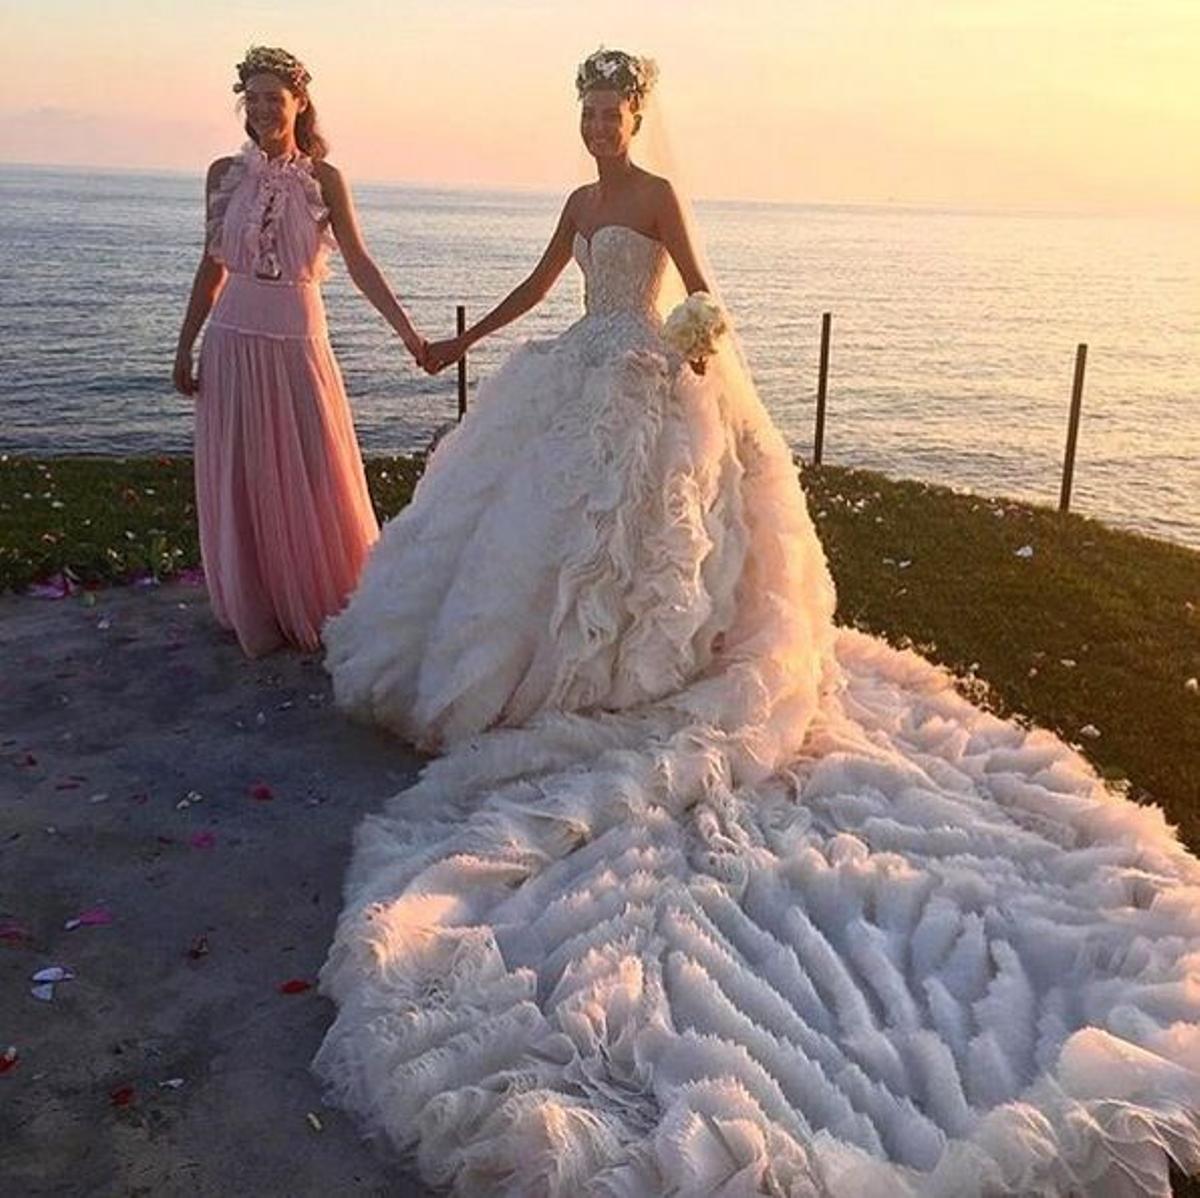 La boda de Giovanna Battaglia: el espectacular diseño de Alexander McQueen